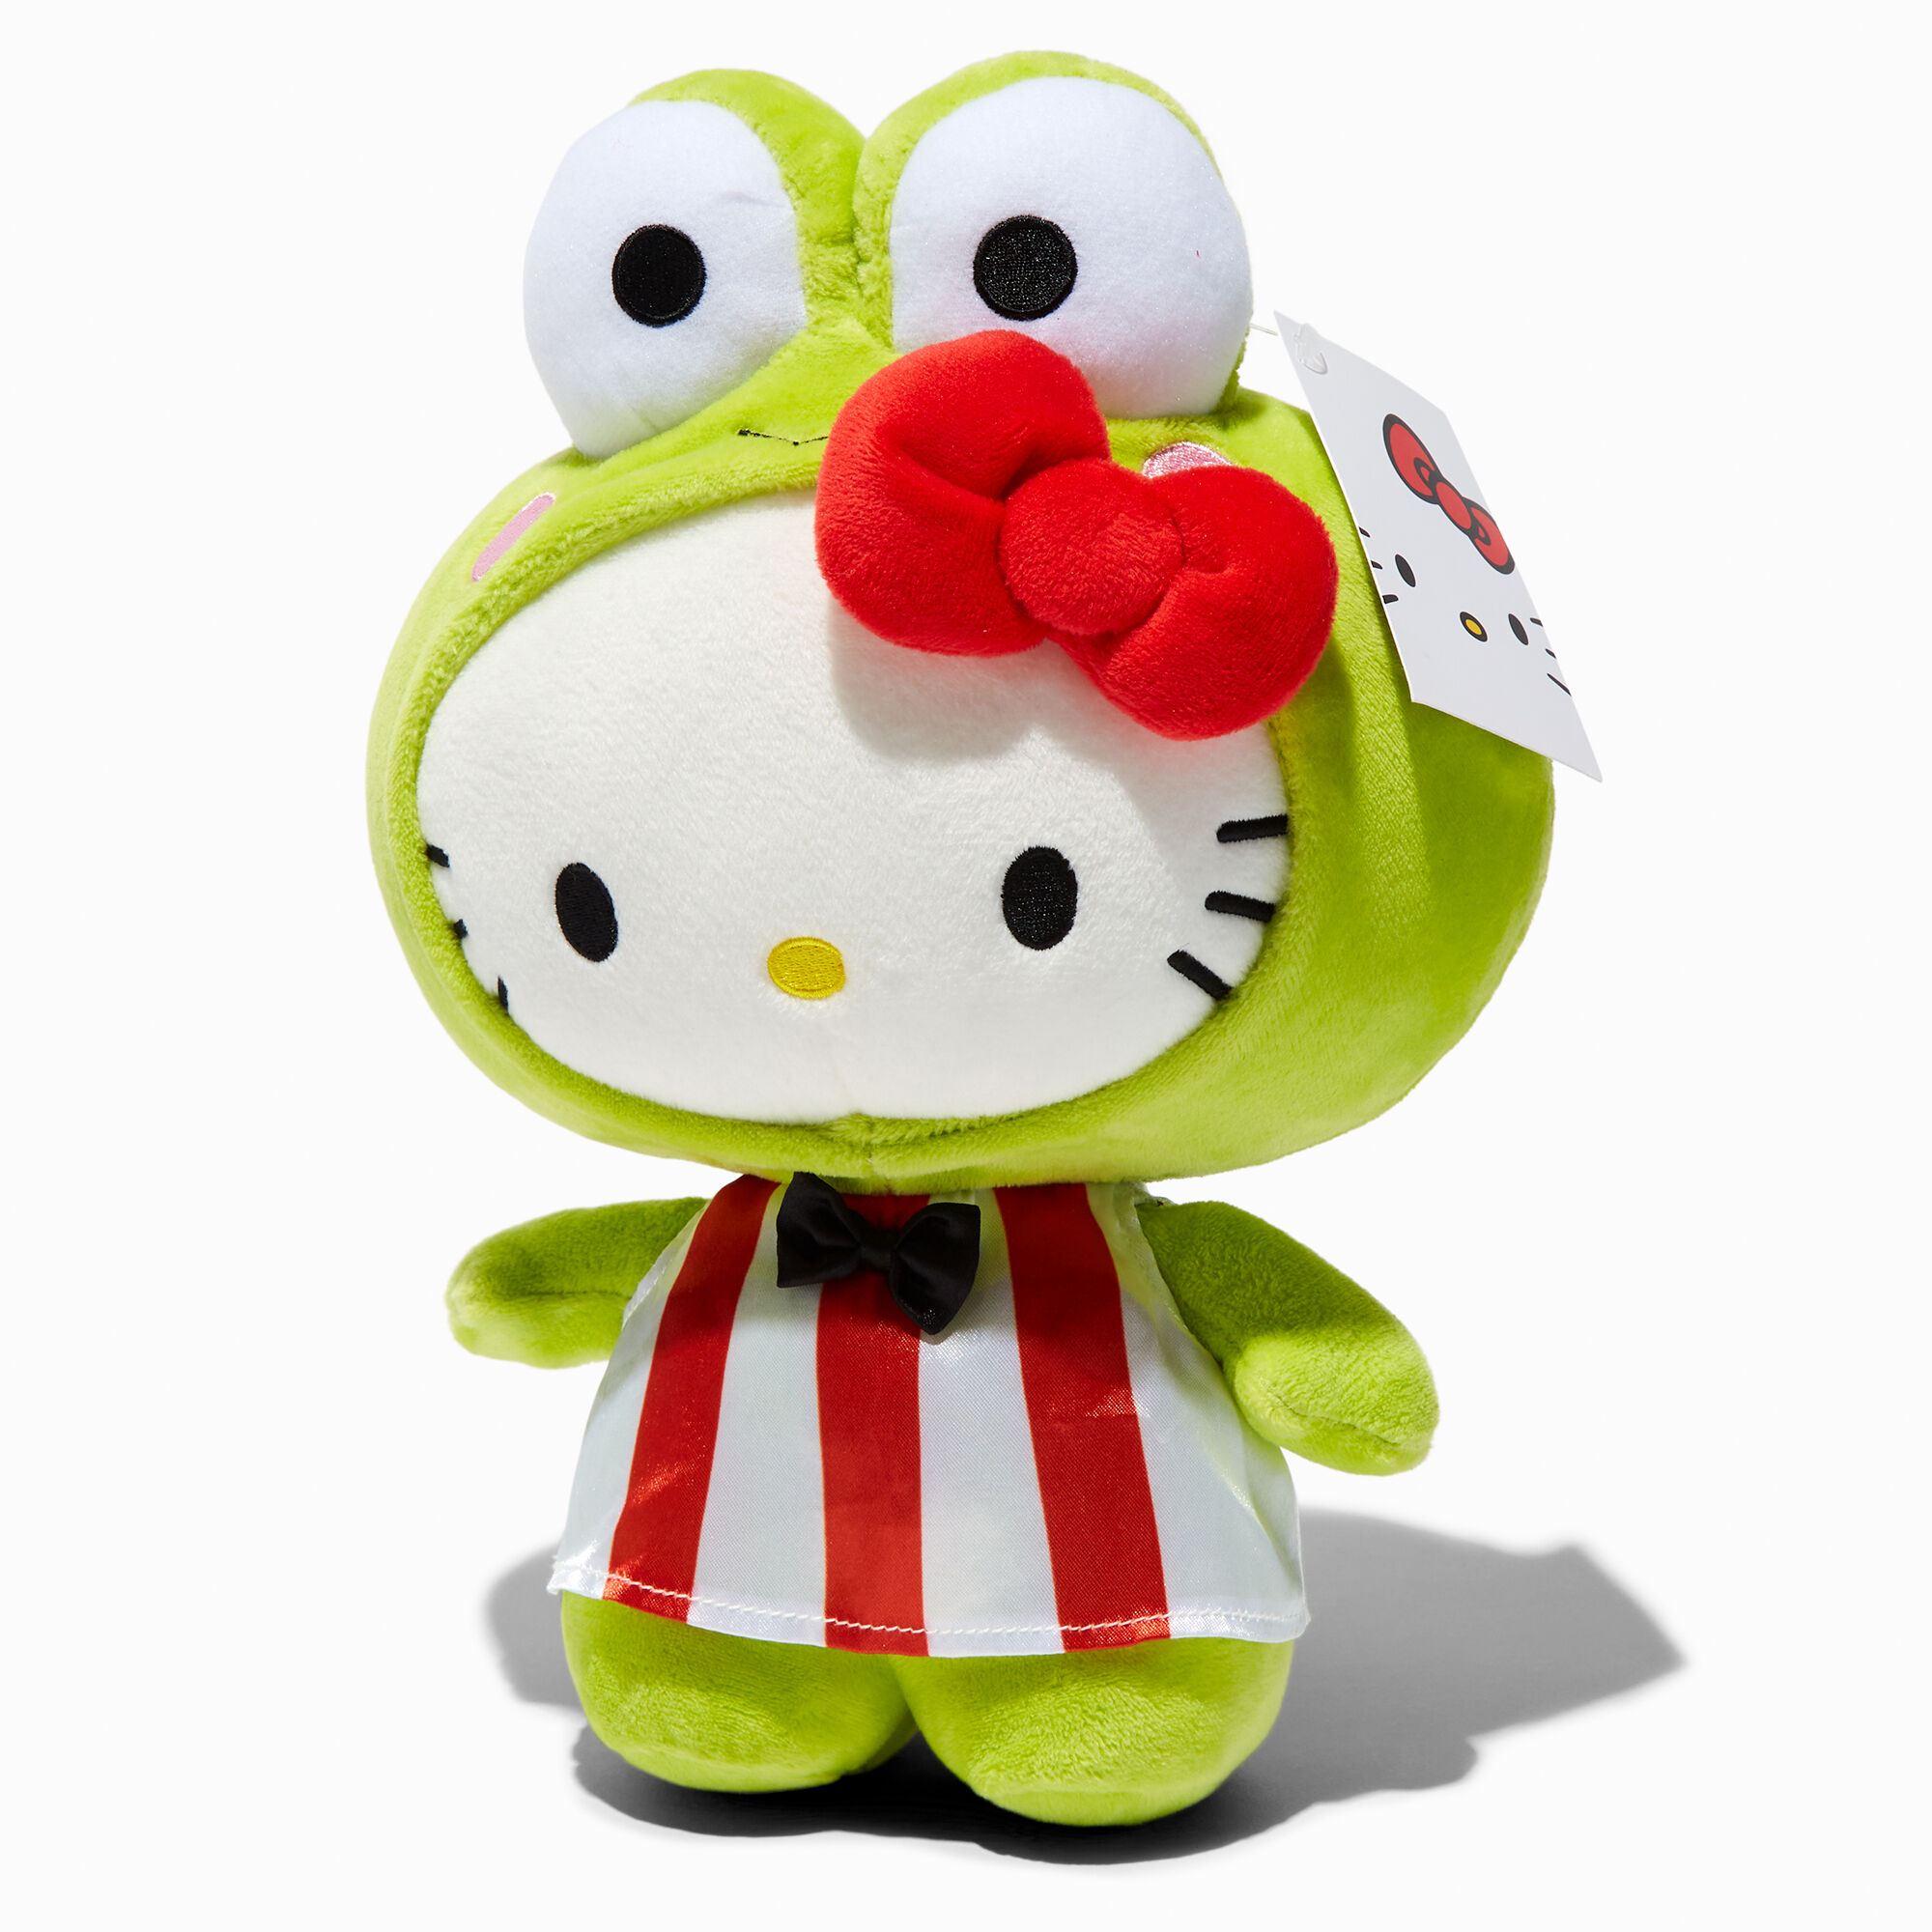 Hello Kitty Keroppi ™ Plush, 9.5 in - Gund